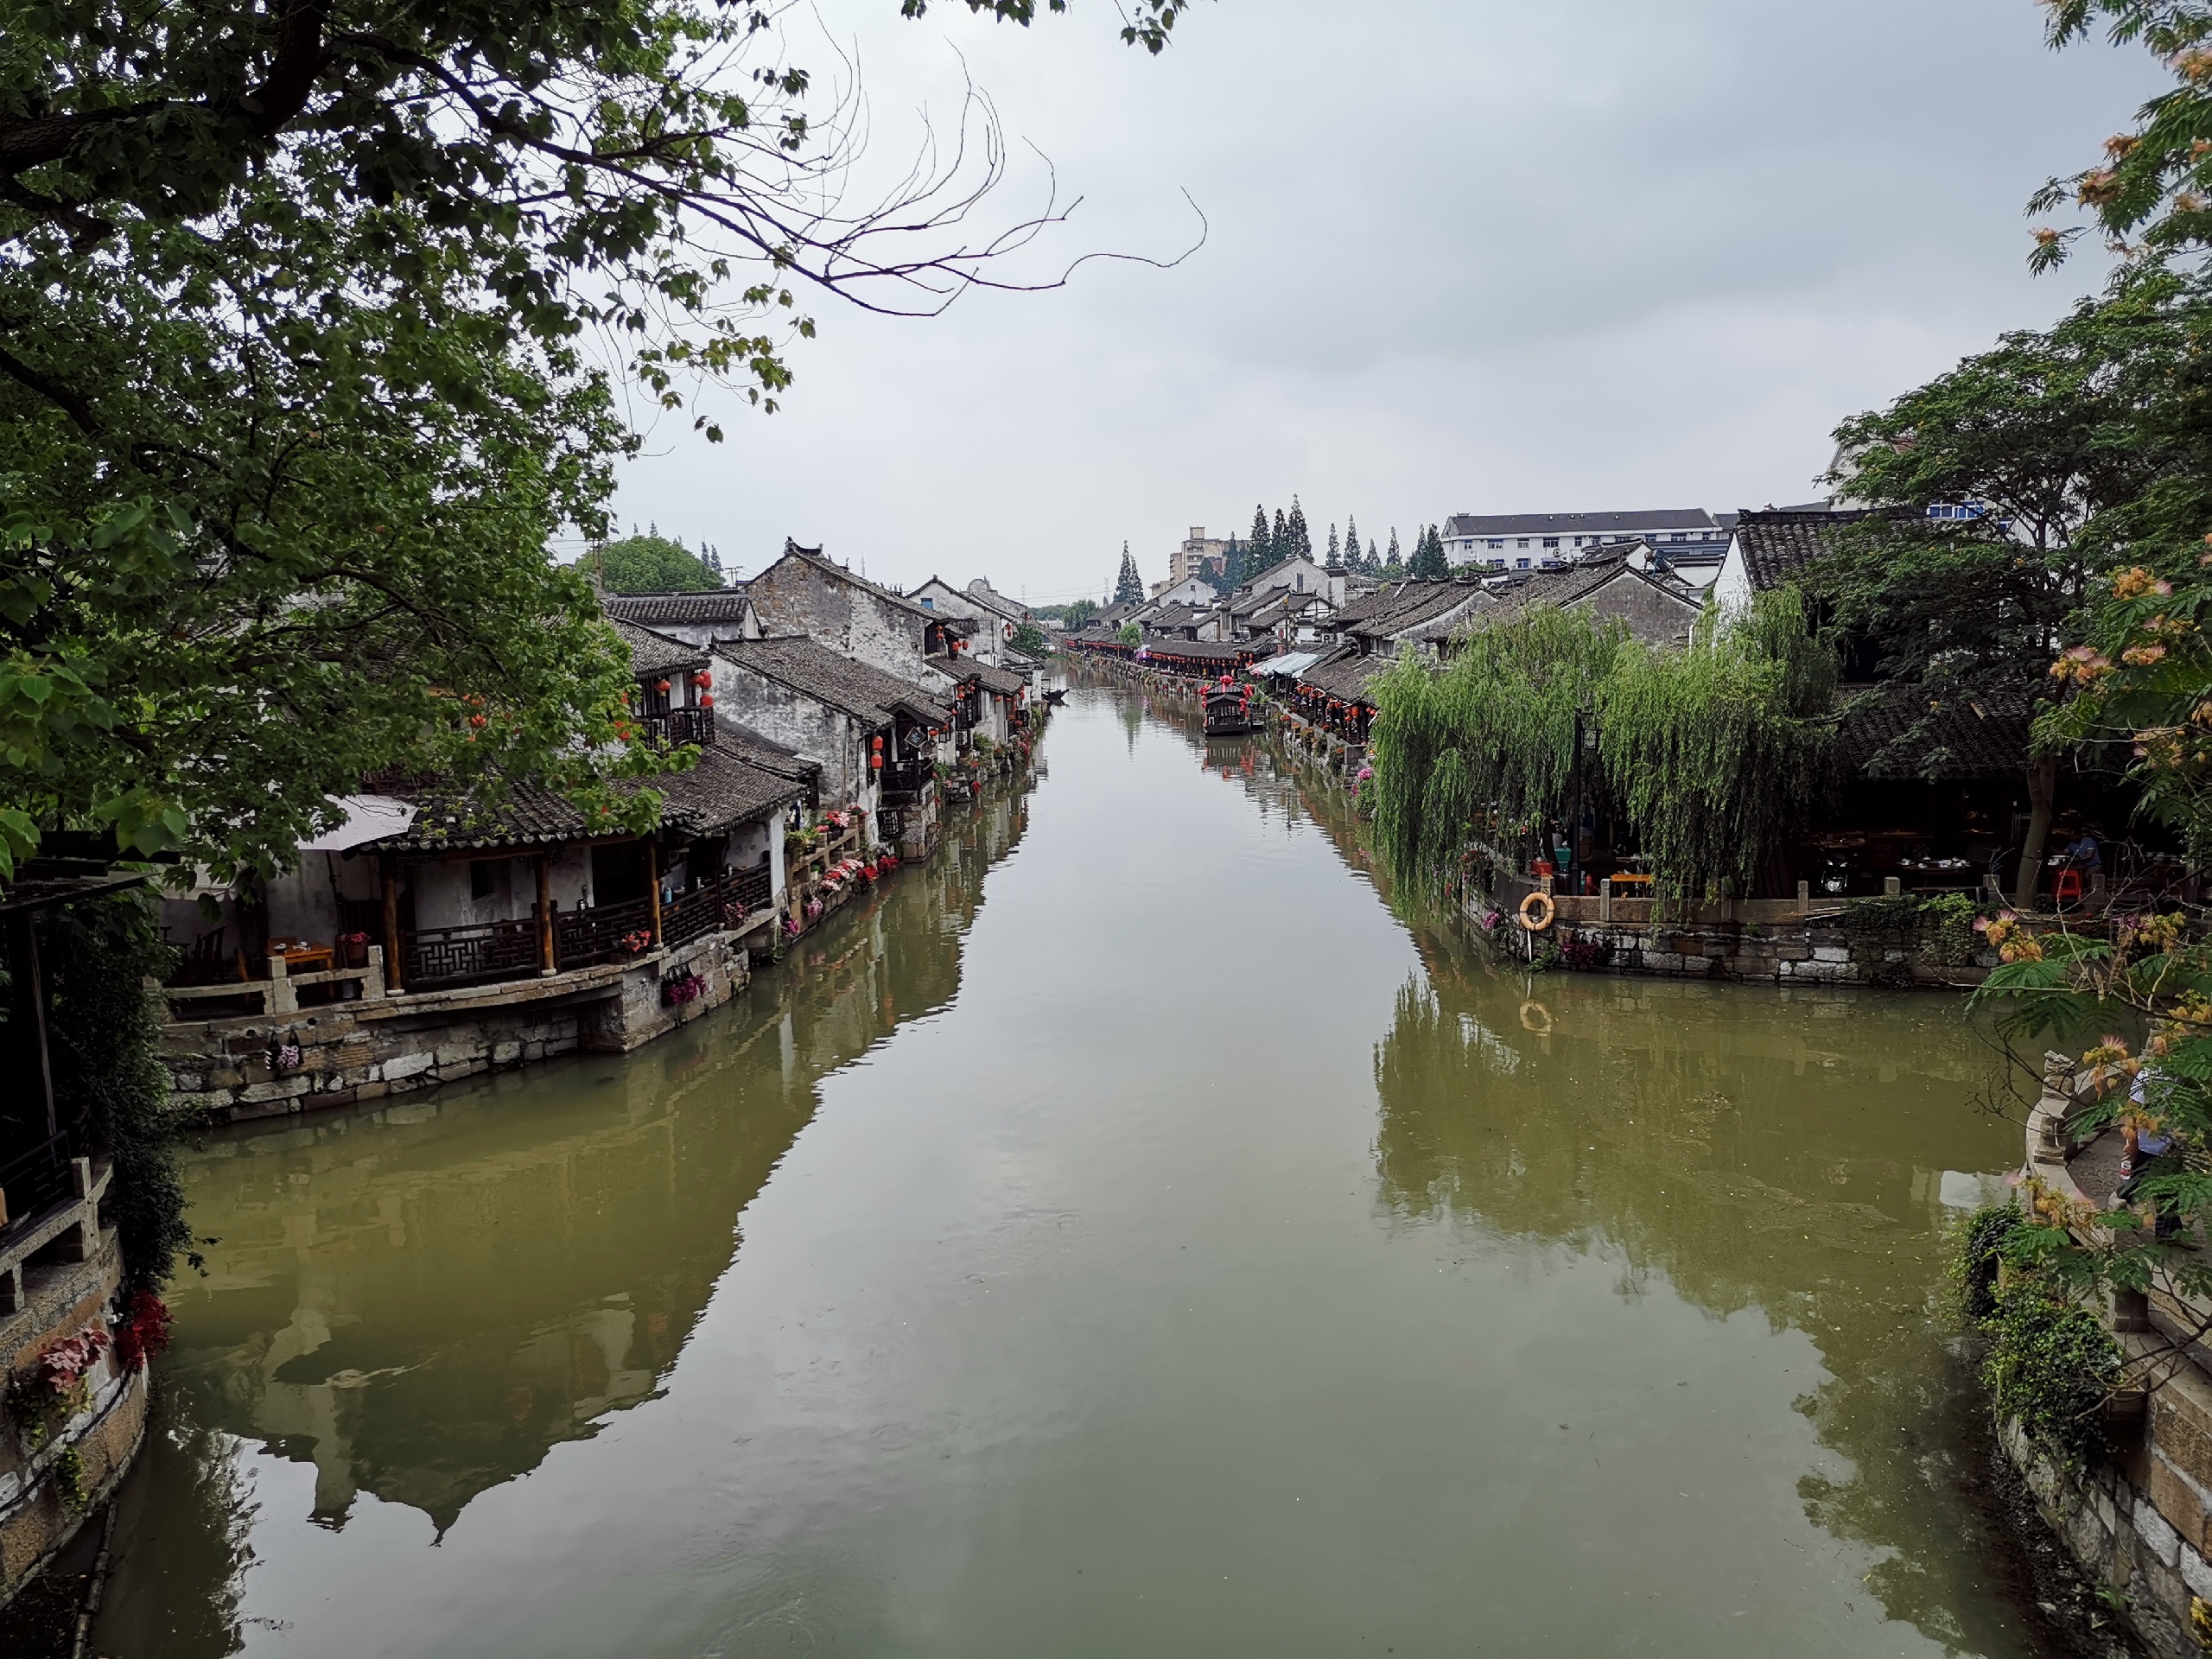 听说这是上海最后一个保留较完好的一个古镇-枫泾古镇